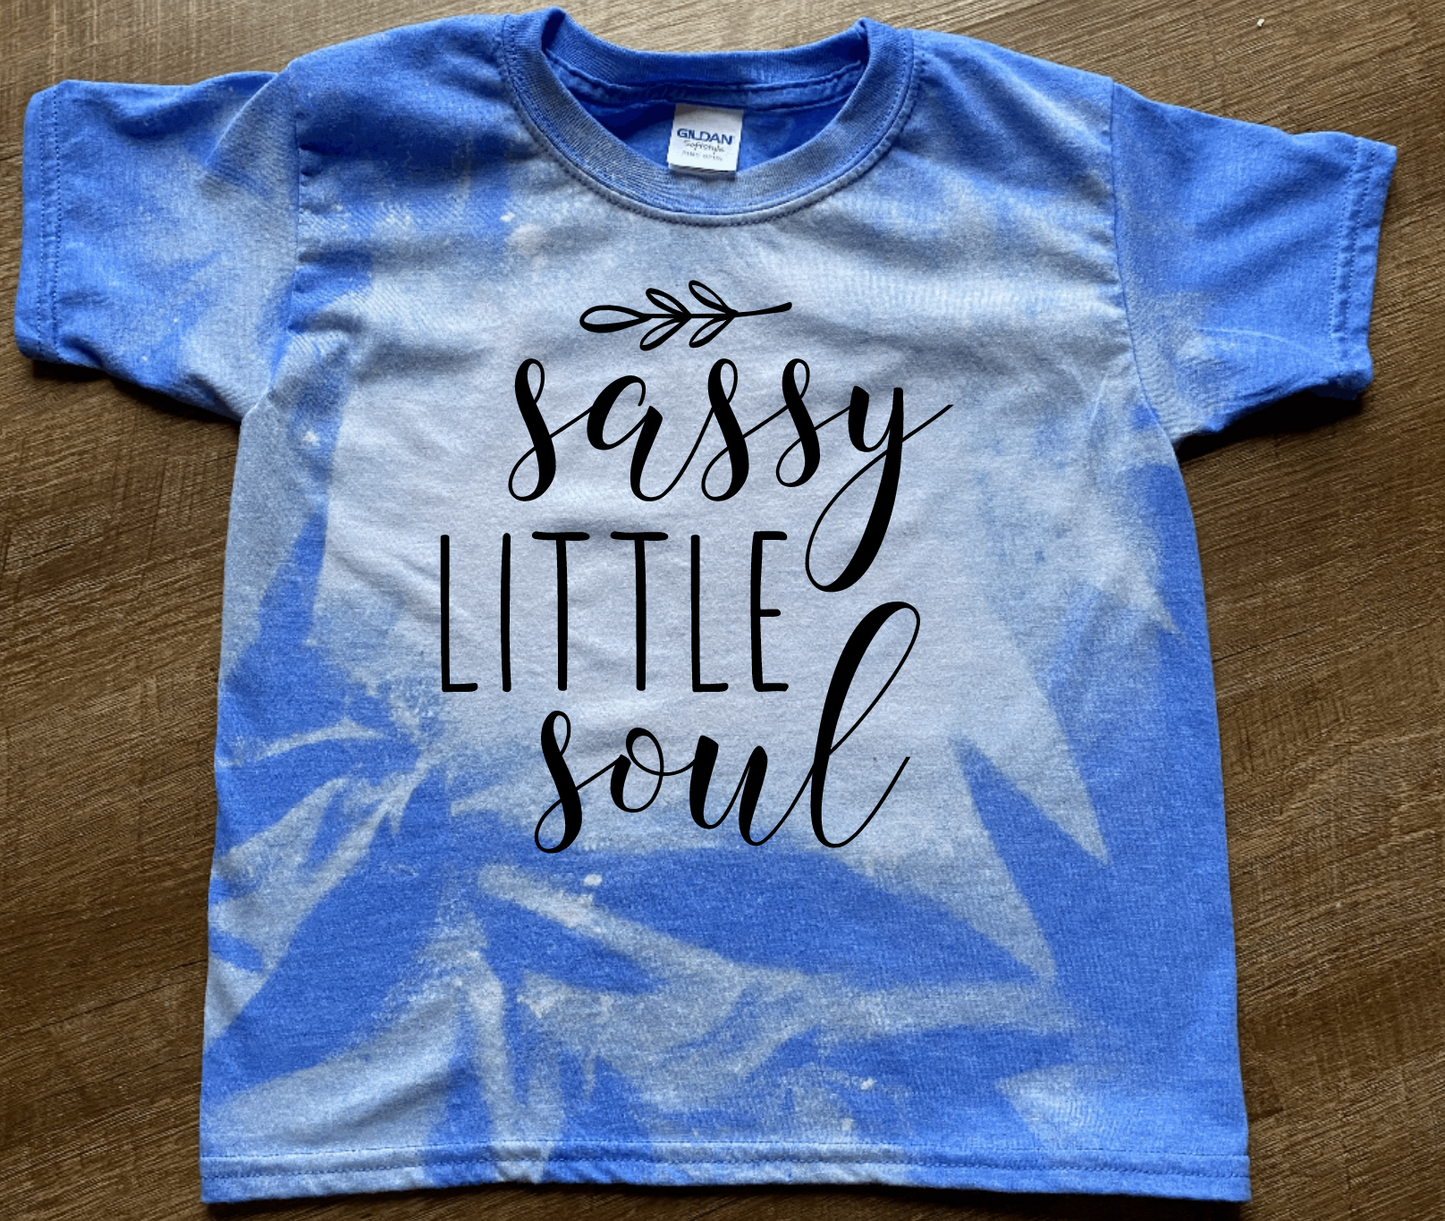 Sassy Little Soul Child Shirt/Bodysuit